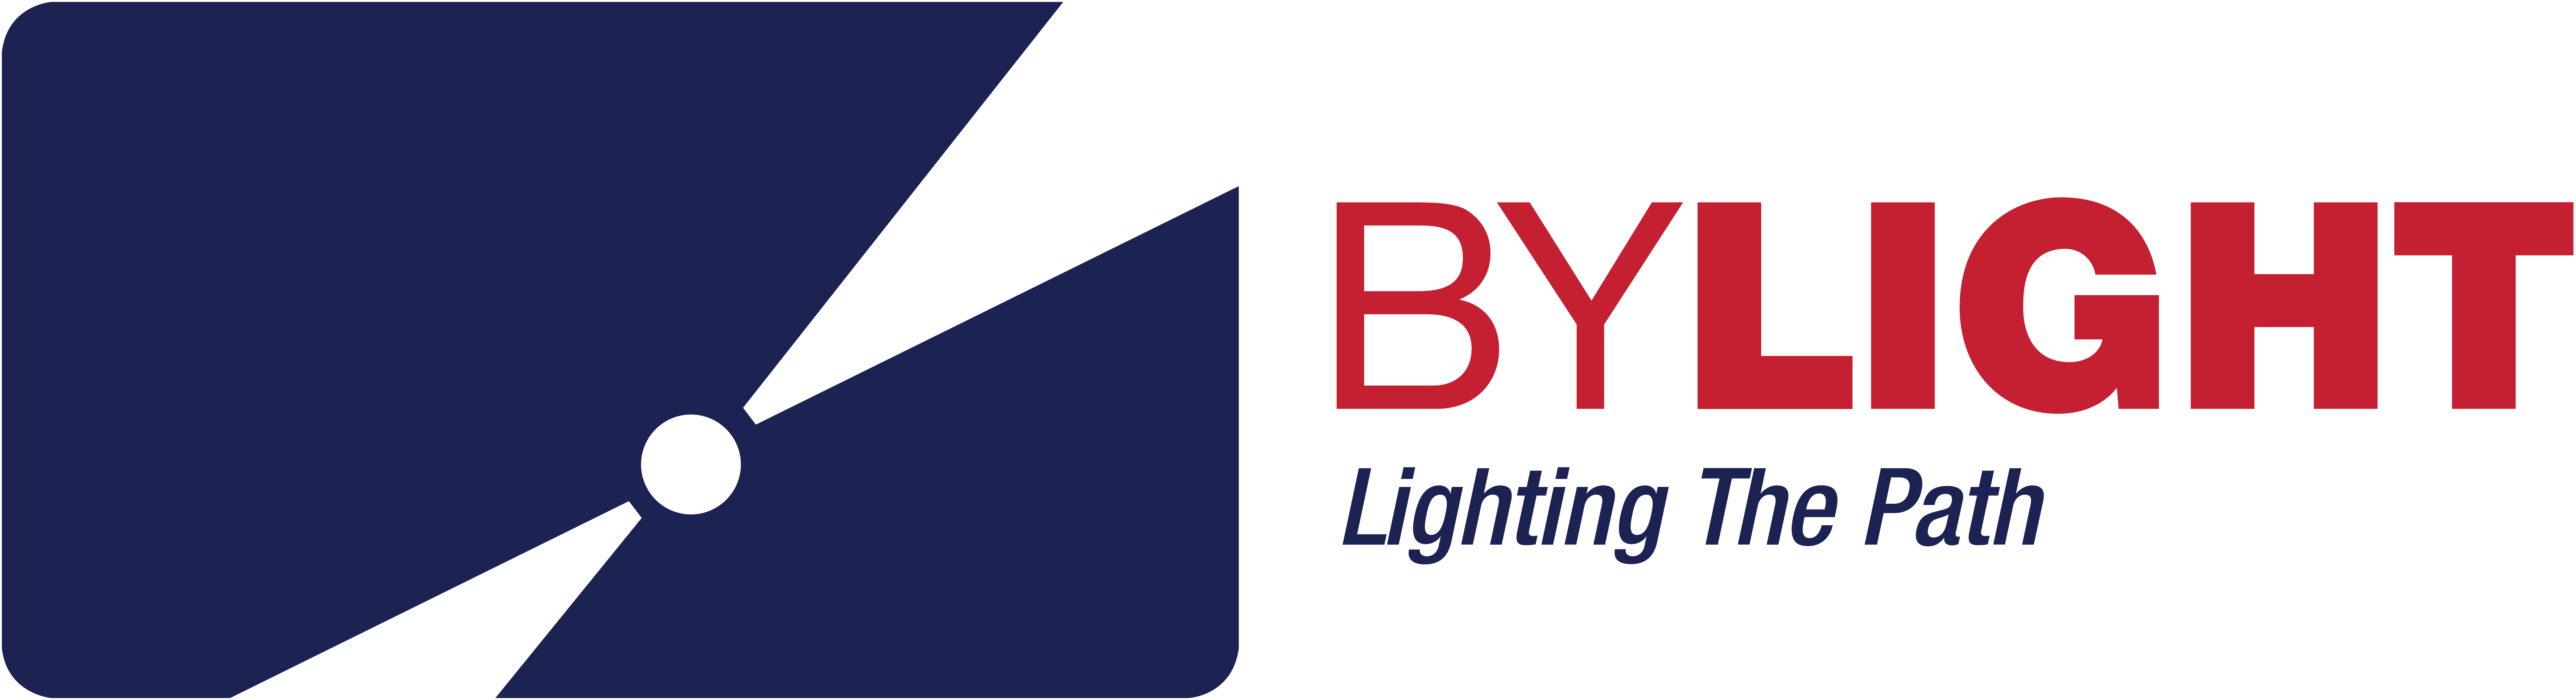 ByLight logo